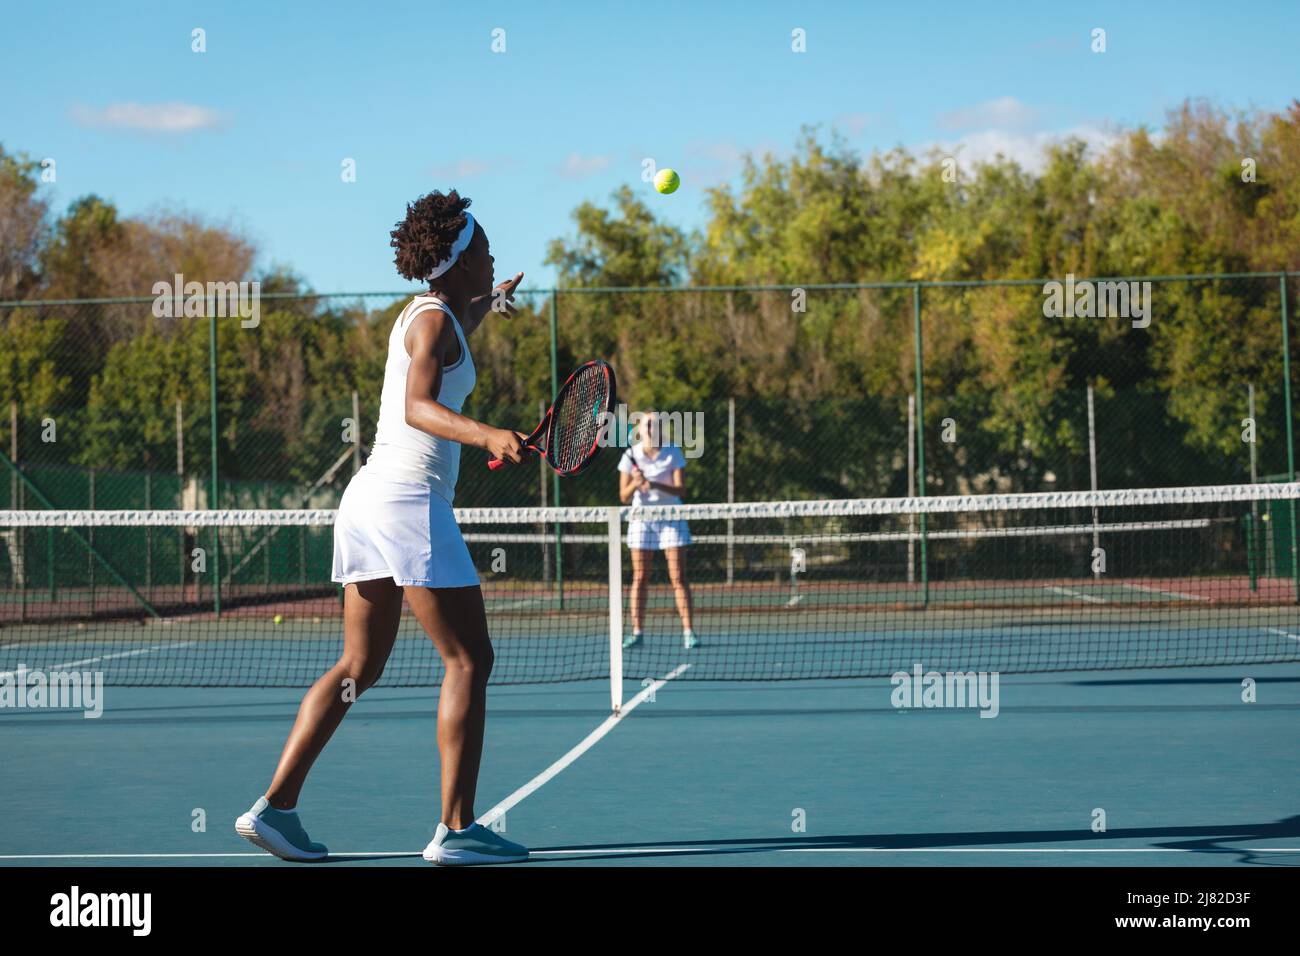 Atleta afro-americana che gioca a tennis con concorrente caucasico in campo il giorno di sole Foto Stock